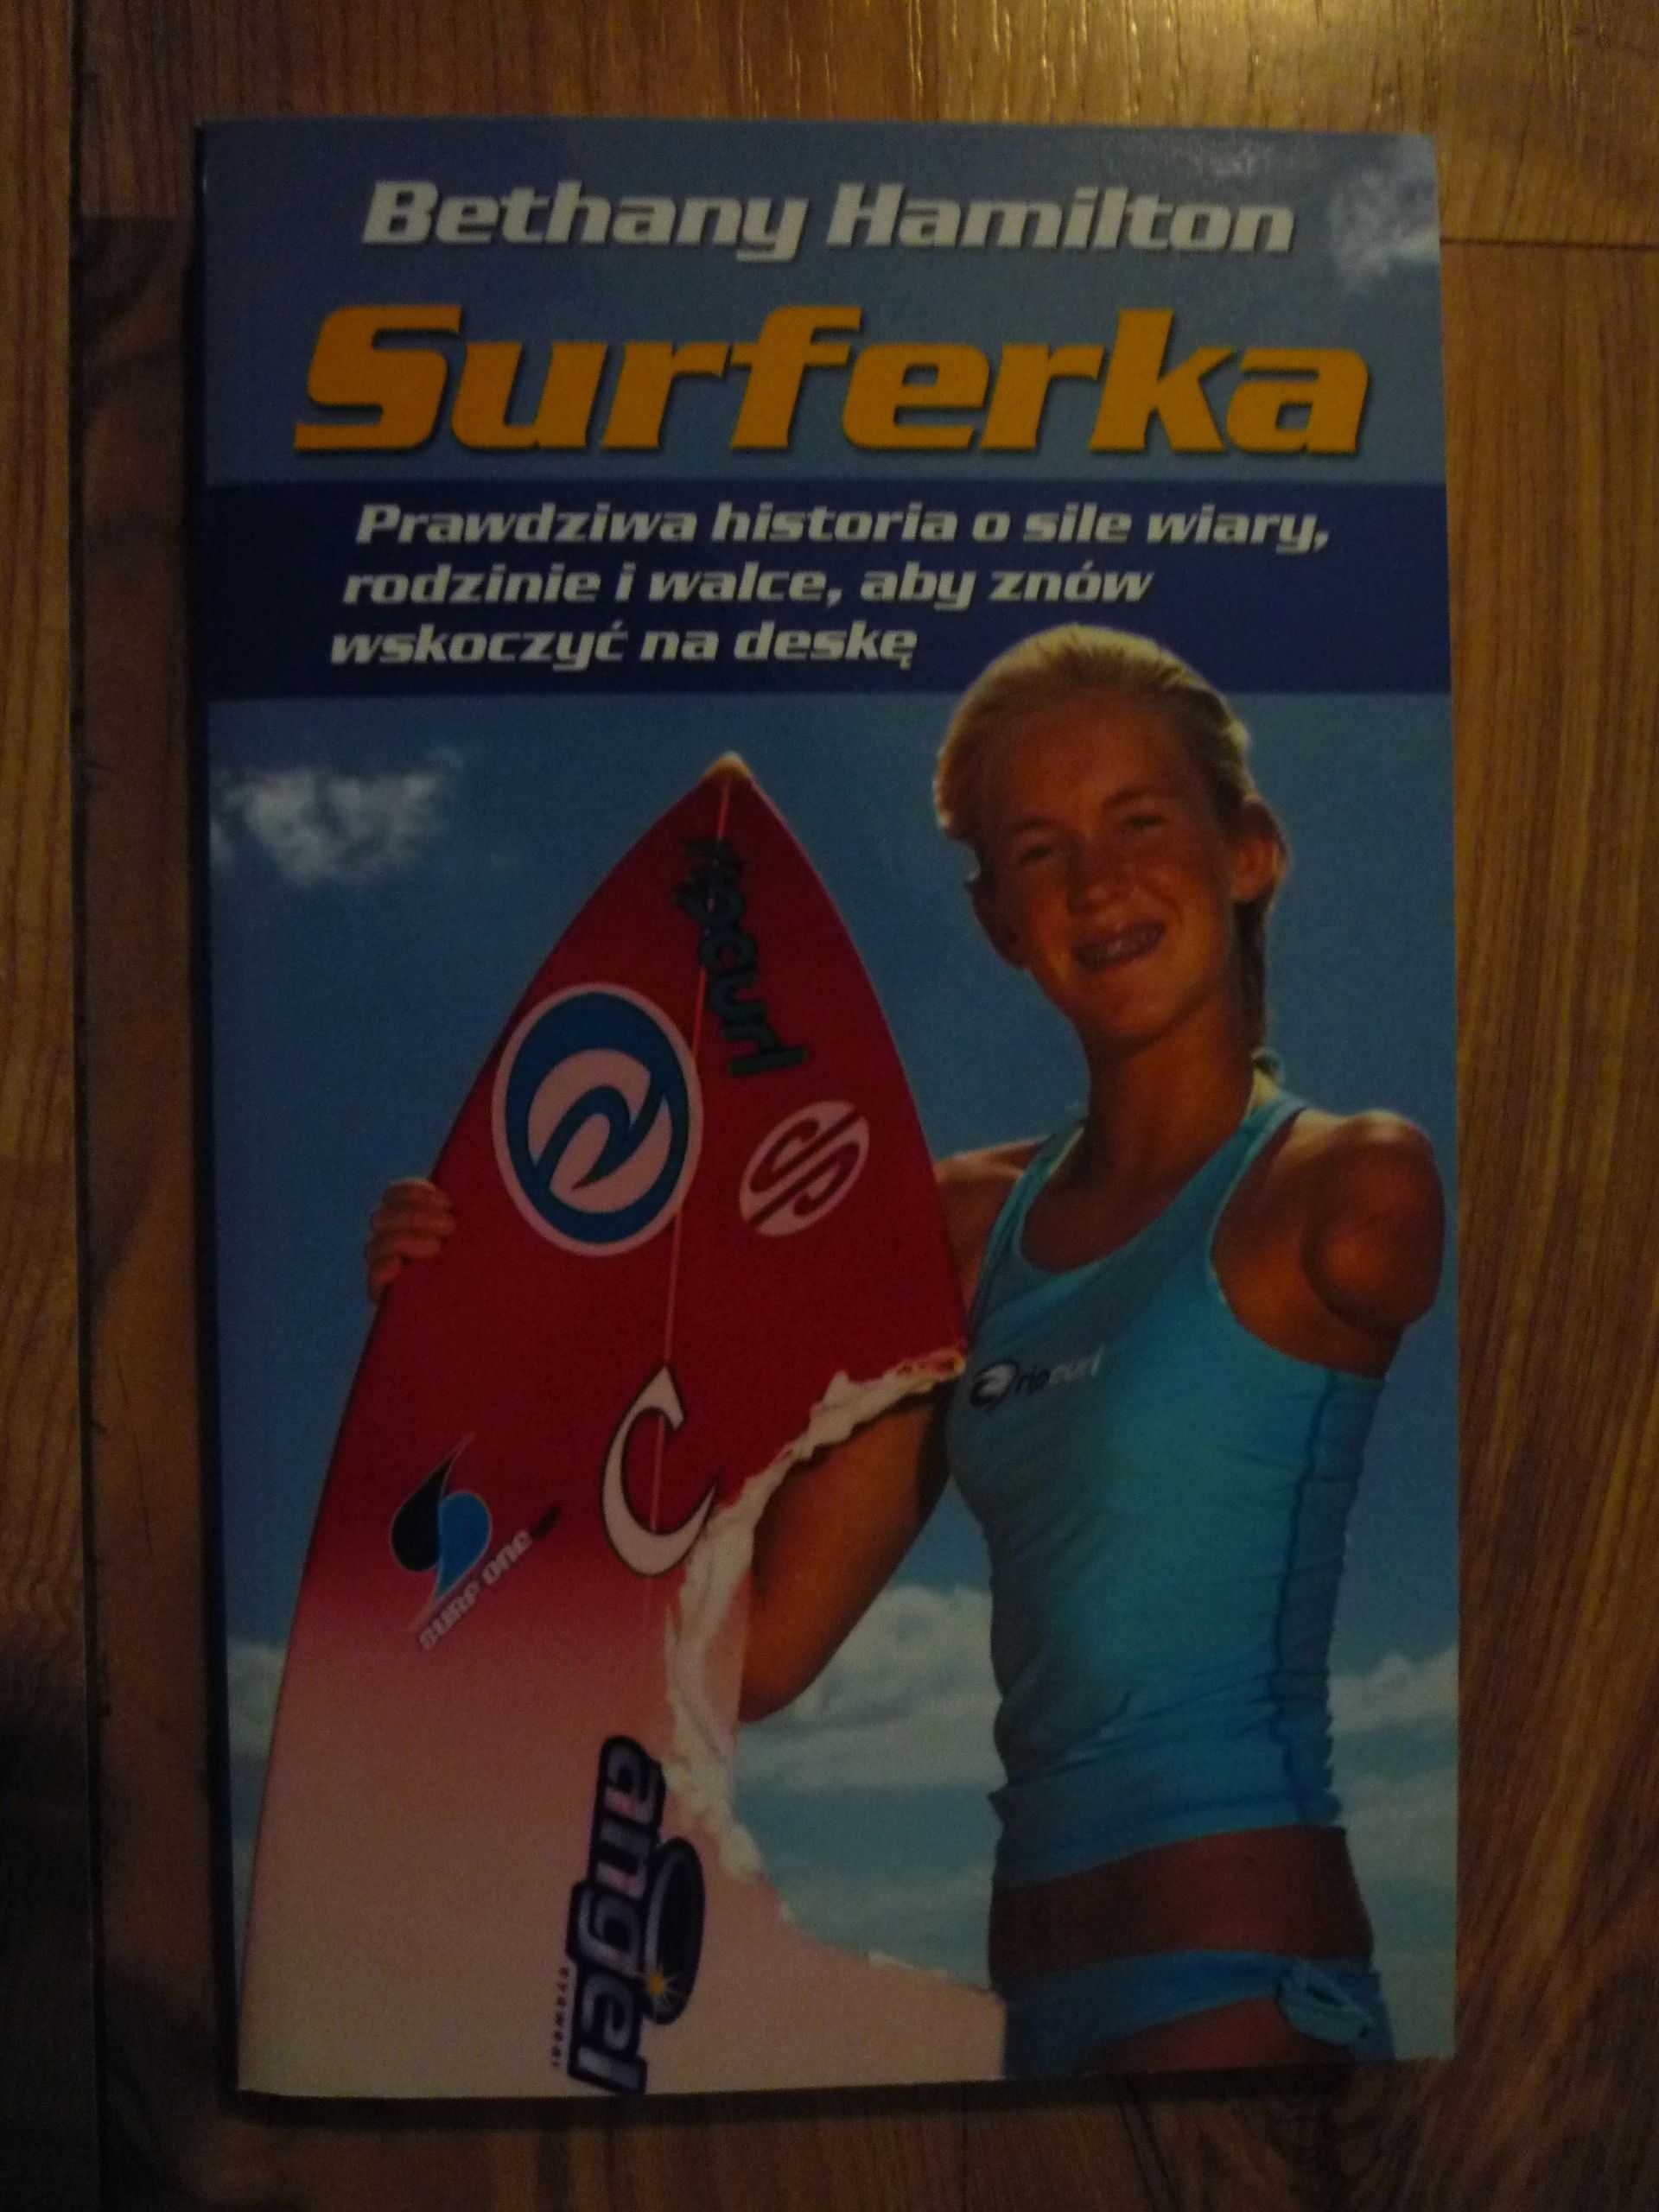 Bethany Hamilton "Surferka"